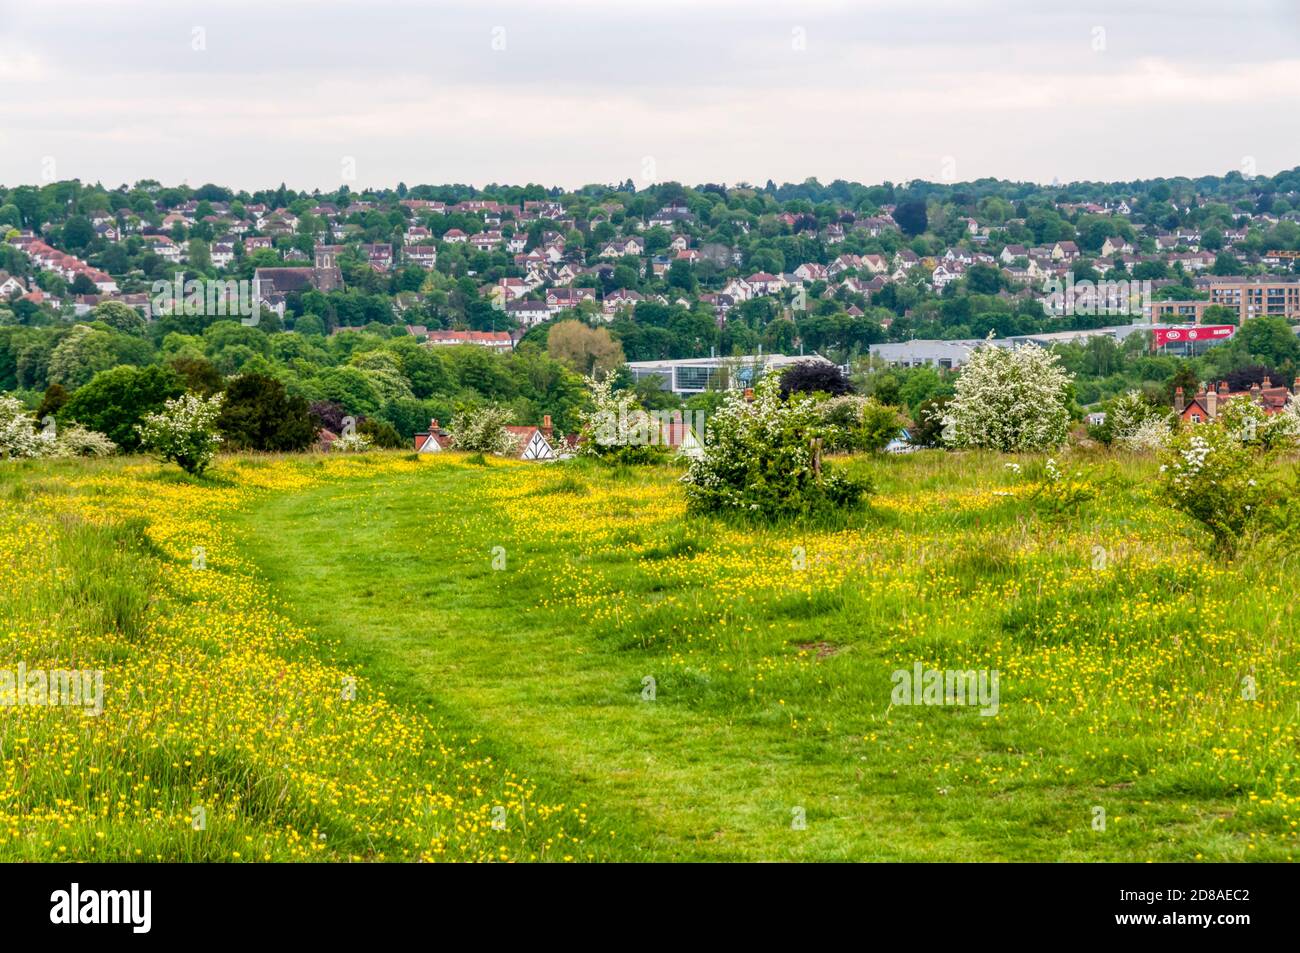 Farthing Downs, un área de espacio abierto propiedad de la ciudad que forma parte de la tierra verde del cinturón al sur de Londres. Foto de stock